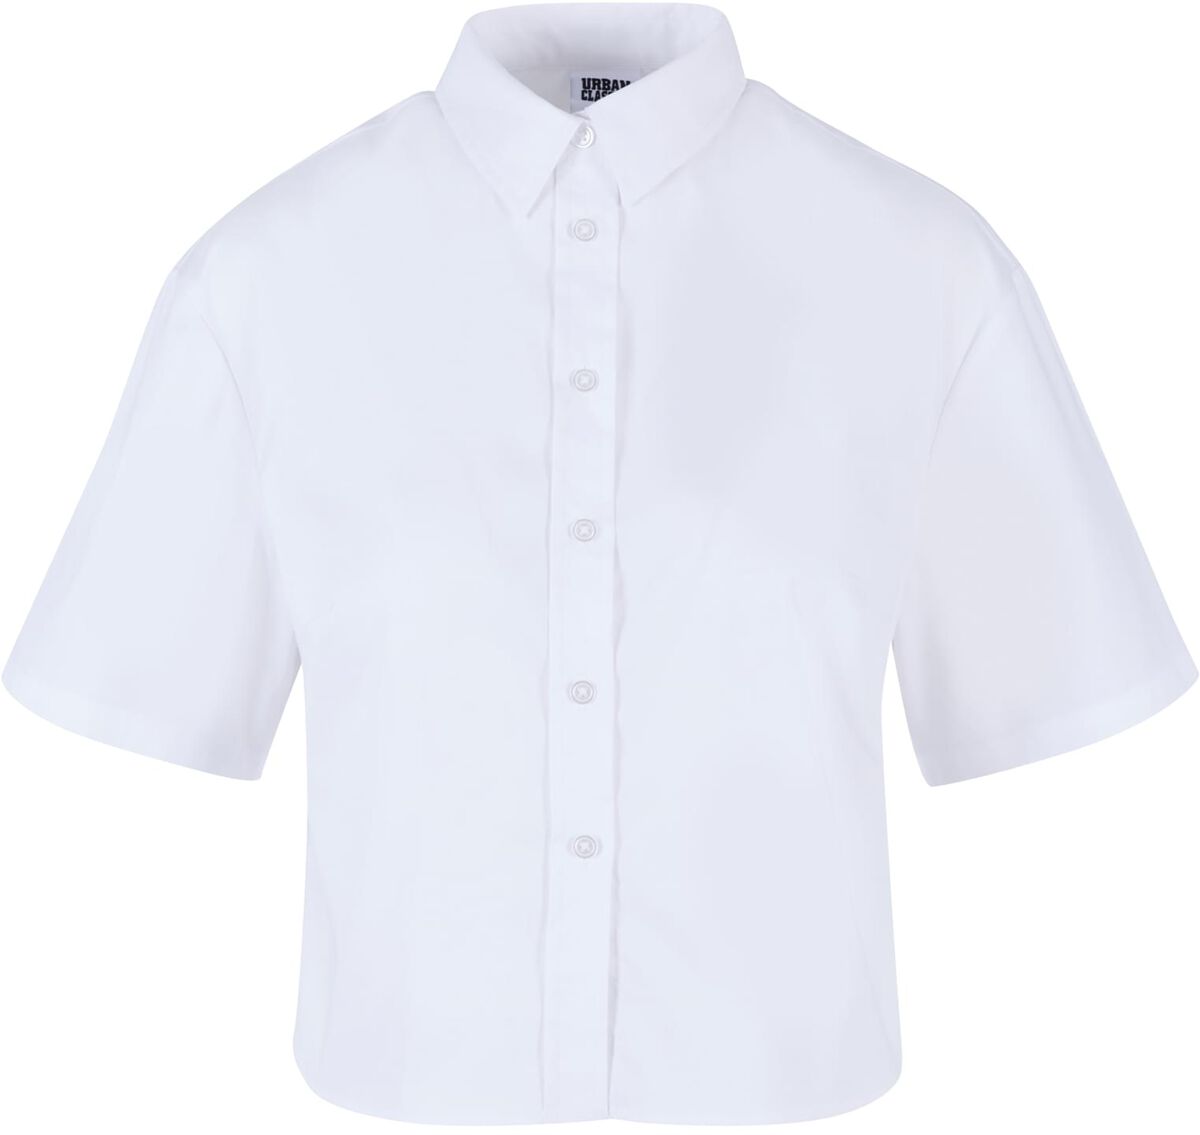 Urban Classics Kurzarmhemd - Ladies Oversized Shirt - XS bis 3XL - für Damen - Größe L - weiß